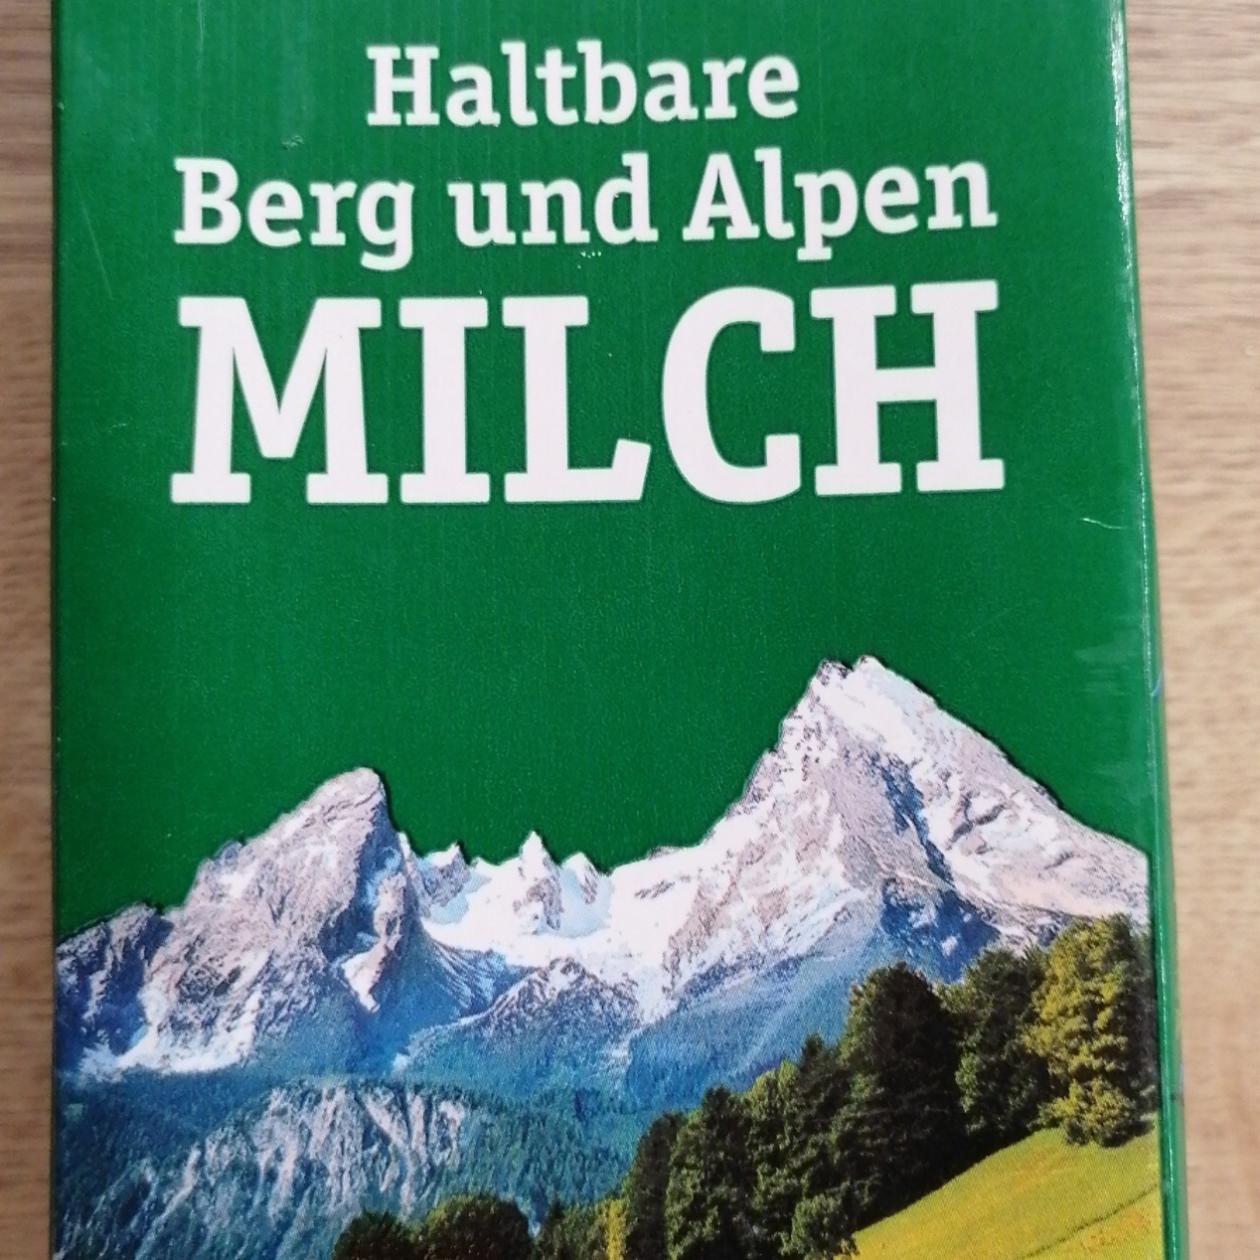 Fotografie - Haltbare Berg und Alpen milch Berchtesgadener Land